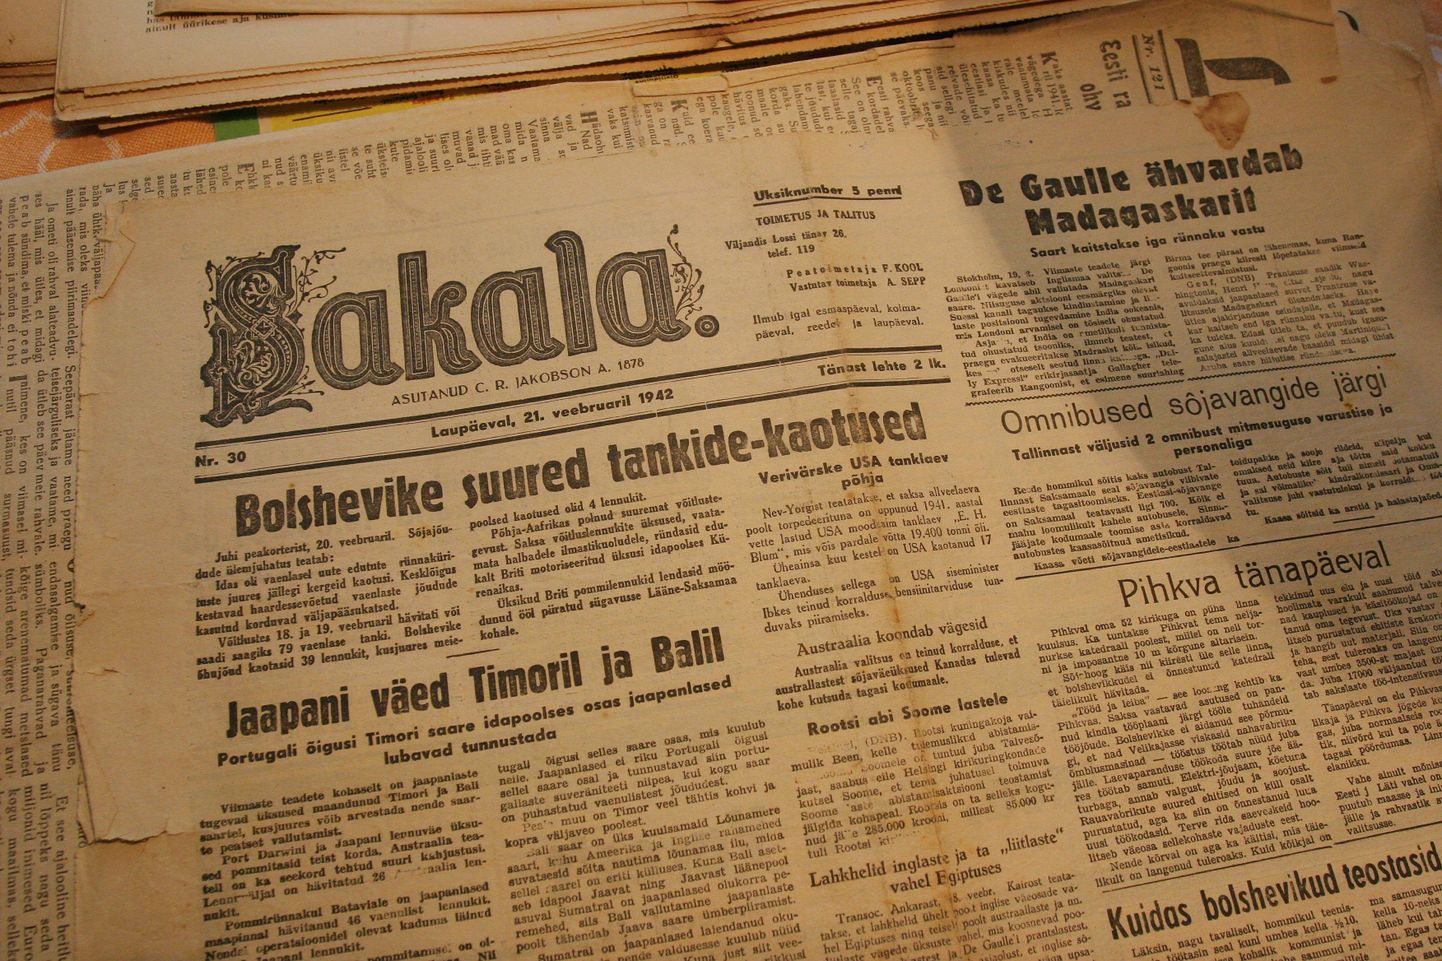 Põltsamaal Pressimuuseumis on külastajatel võimalik tutvuda eestikeelse ajalehe kujunemislooga selle hälliperioodist tänapäevani. Väljas on valik vanimaid eesti ajalehti.